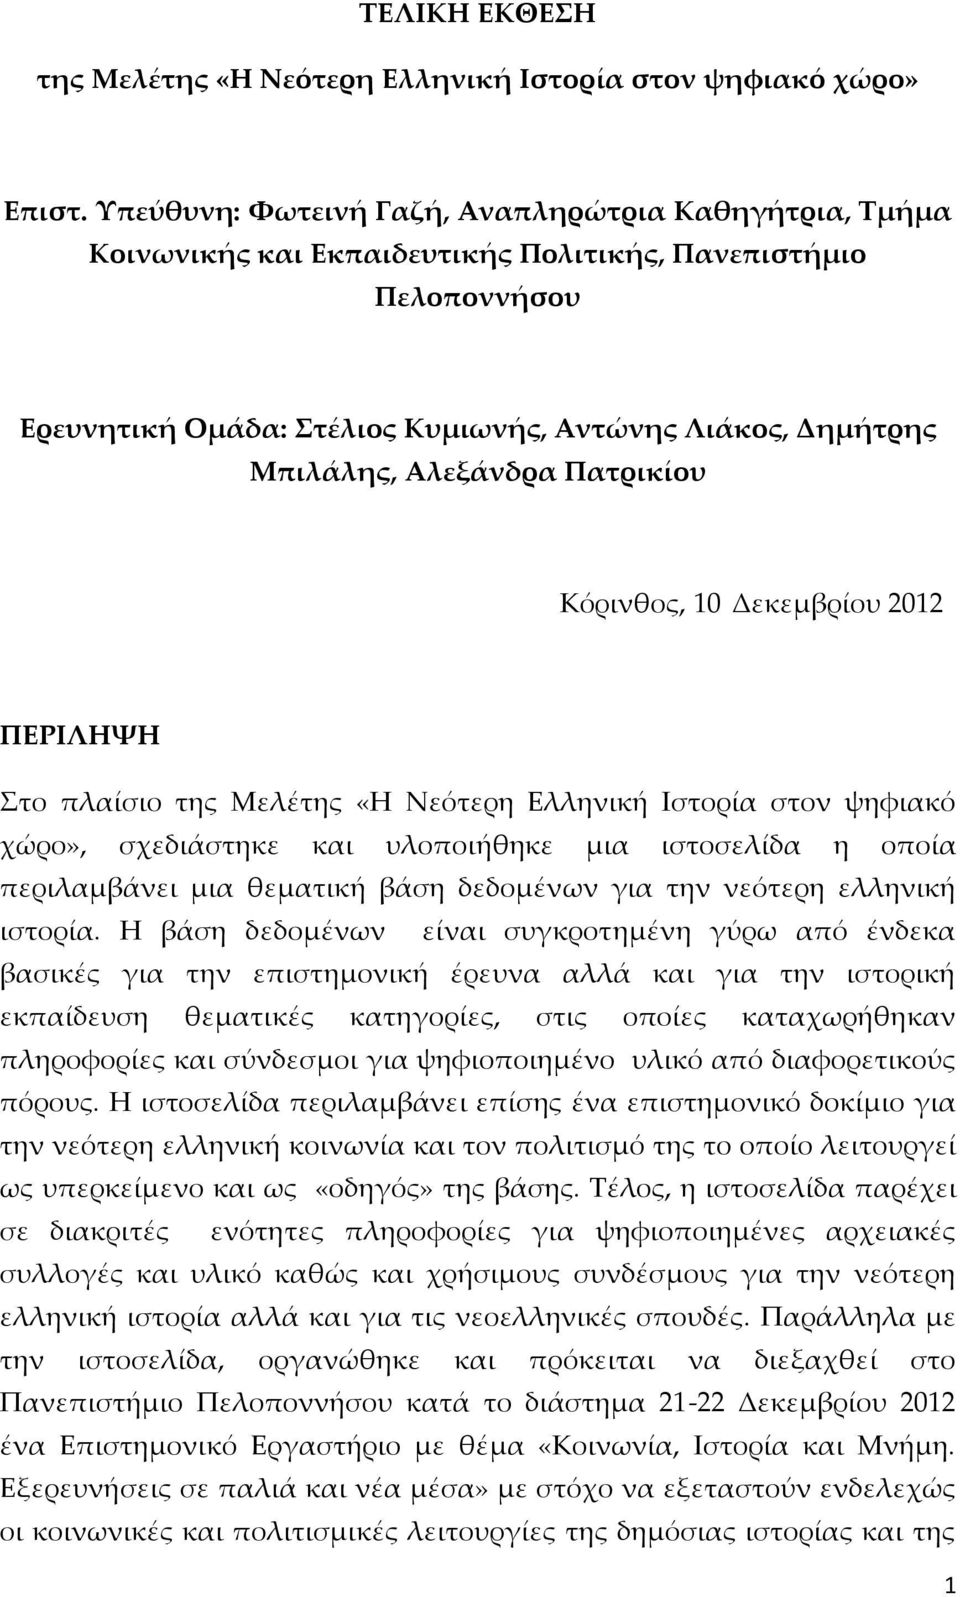 Αλεξάνδρα Πατρικίου Κόρινθος, 10 Δεκεμβρίου 2012 ΠΕΡΙΛΗΨΗ Στο πλαίσιο της Μελέτης «Η Νεότερη Ελληνική Ιστορία στον ψηφιακό χώρο», σχεδιάστηκε και υλοποιήθηκε μια ιστοσελίδα η οποία περιλαμβάνει μια